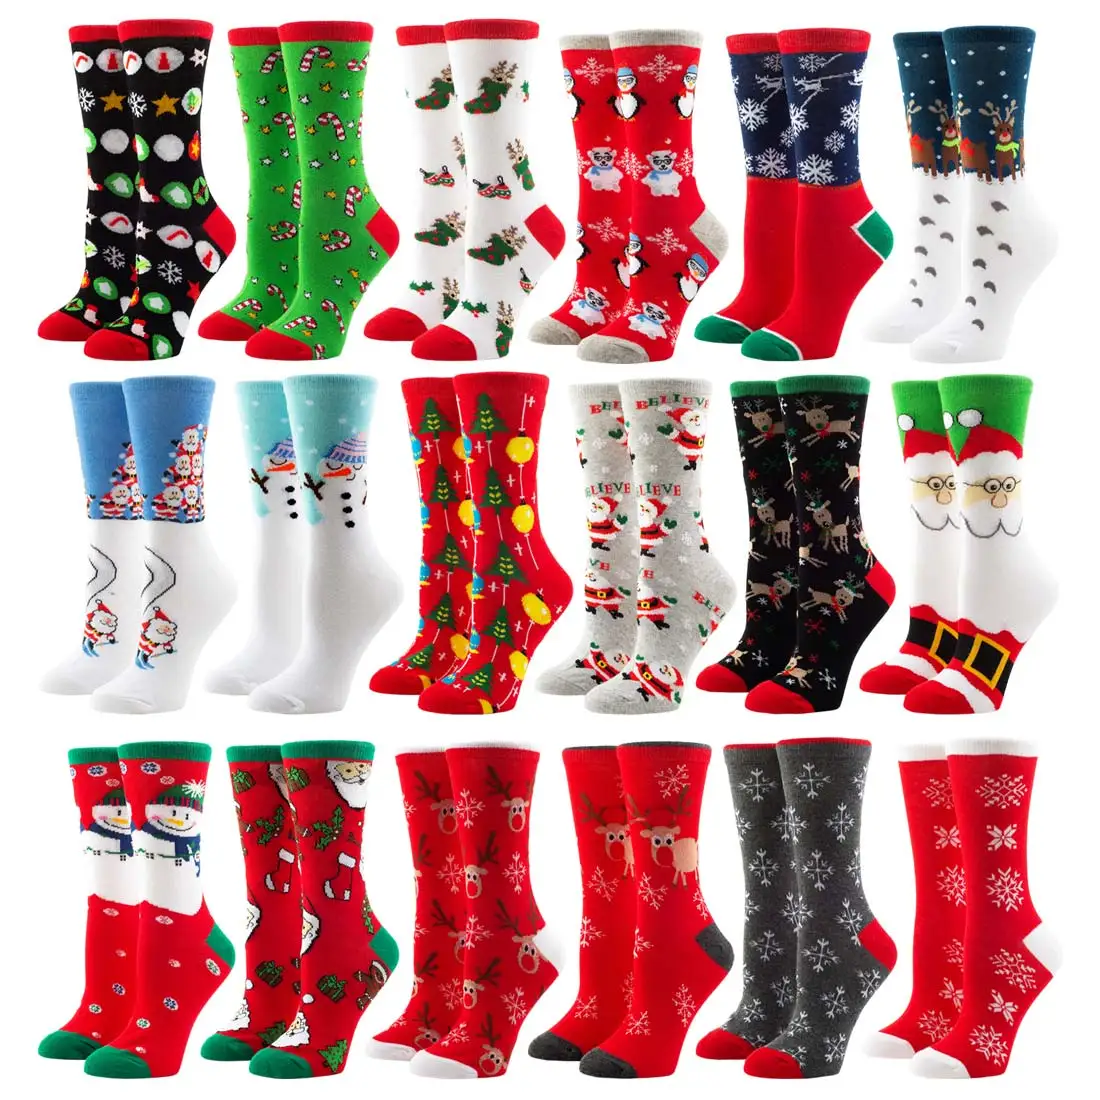 

Женские рождественские носки, забавный Санта-Клаус, дерево, искусственный снег, хлопковая трубка, команда счастливых мужчин, новогодний под...